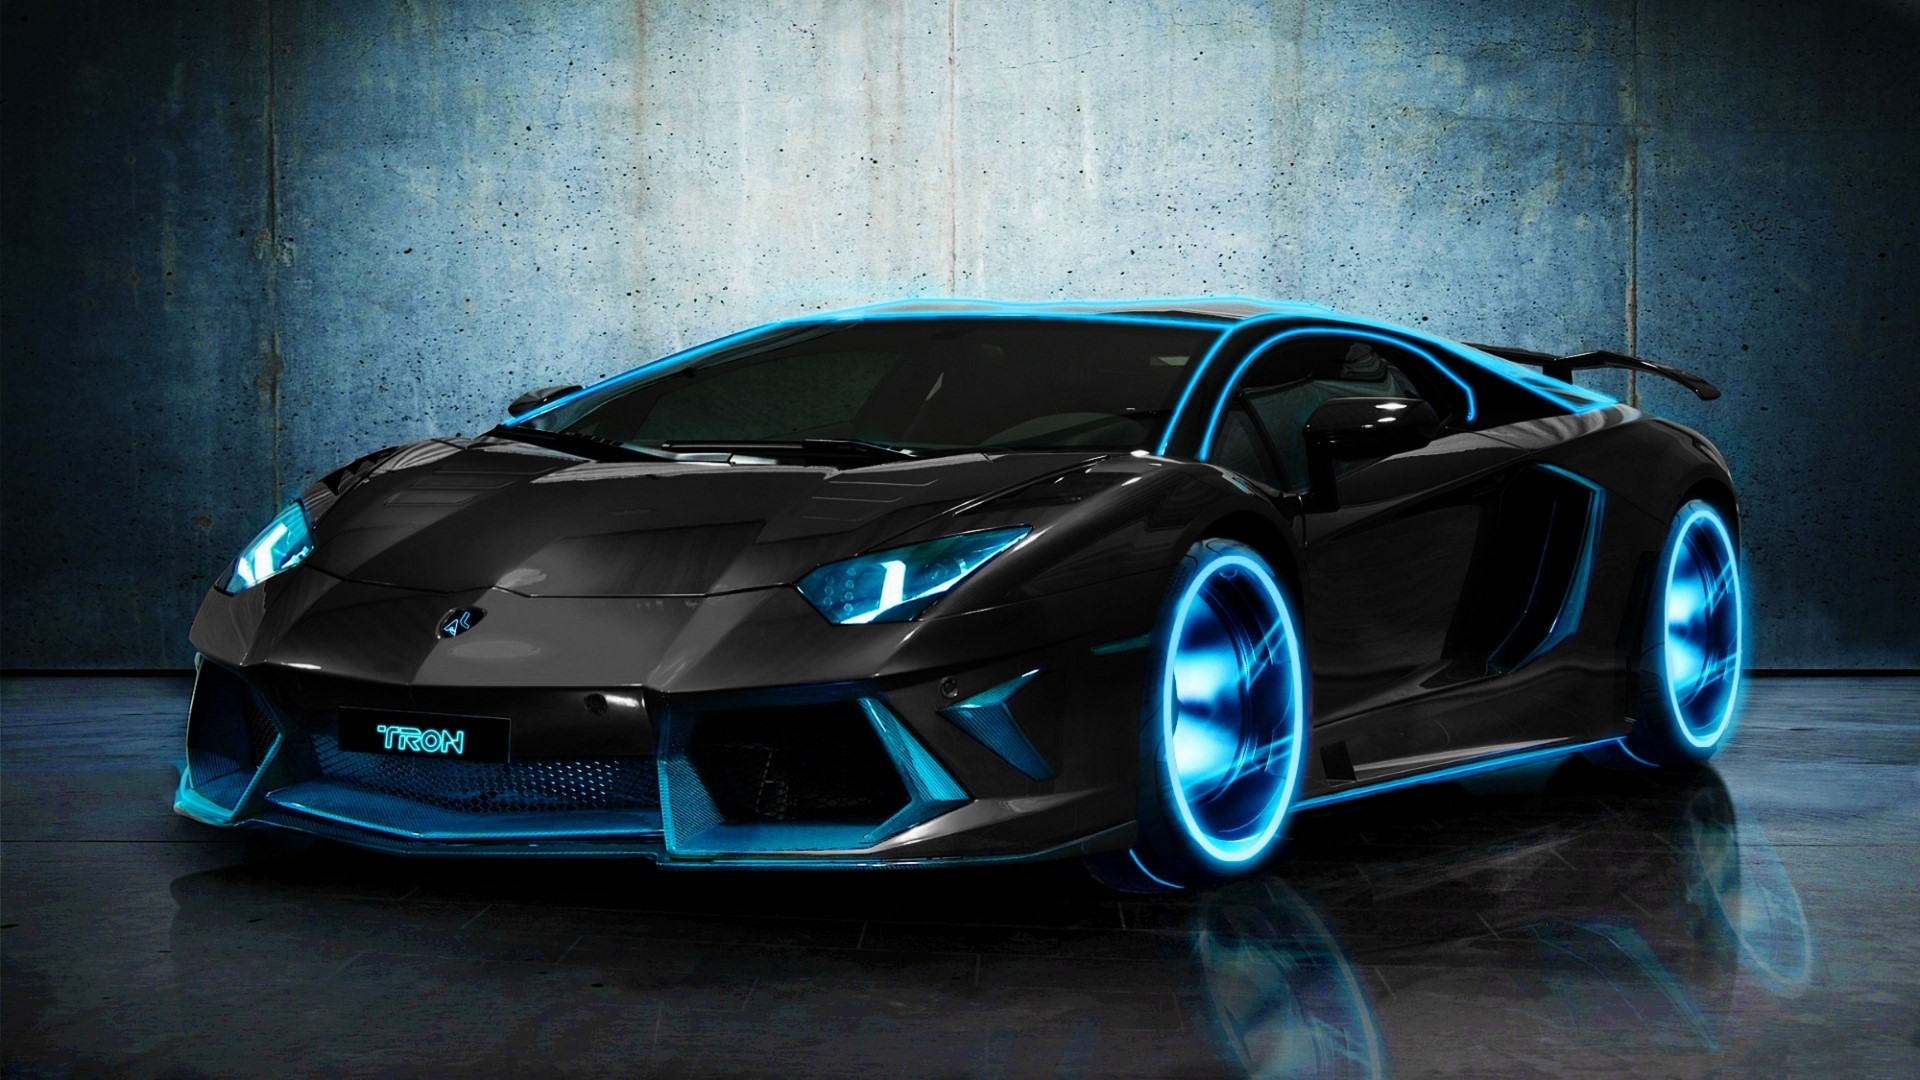 Xem ngay hình ảnh Lamborghini Tron Aventador Black nổi bật với vẻ ngoài siêu khí đốt đầy mê hoặc. Thoải mái thưởng thức từng đường nét ở mẫu xe này và cảm nhận sự phấn khích khi lái trên đường. 